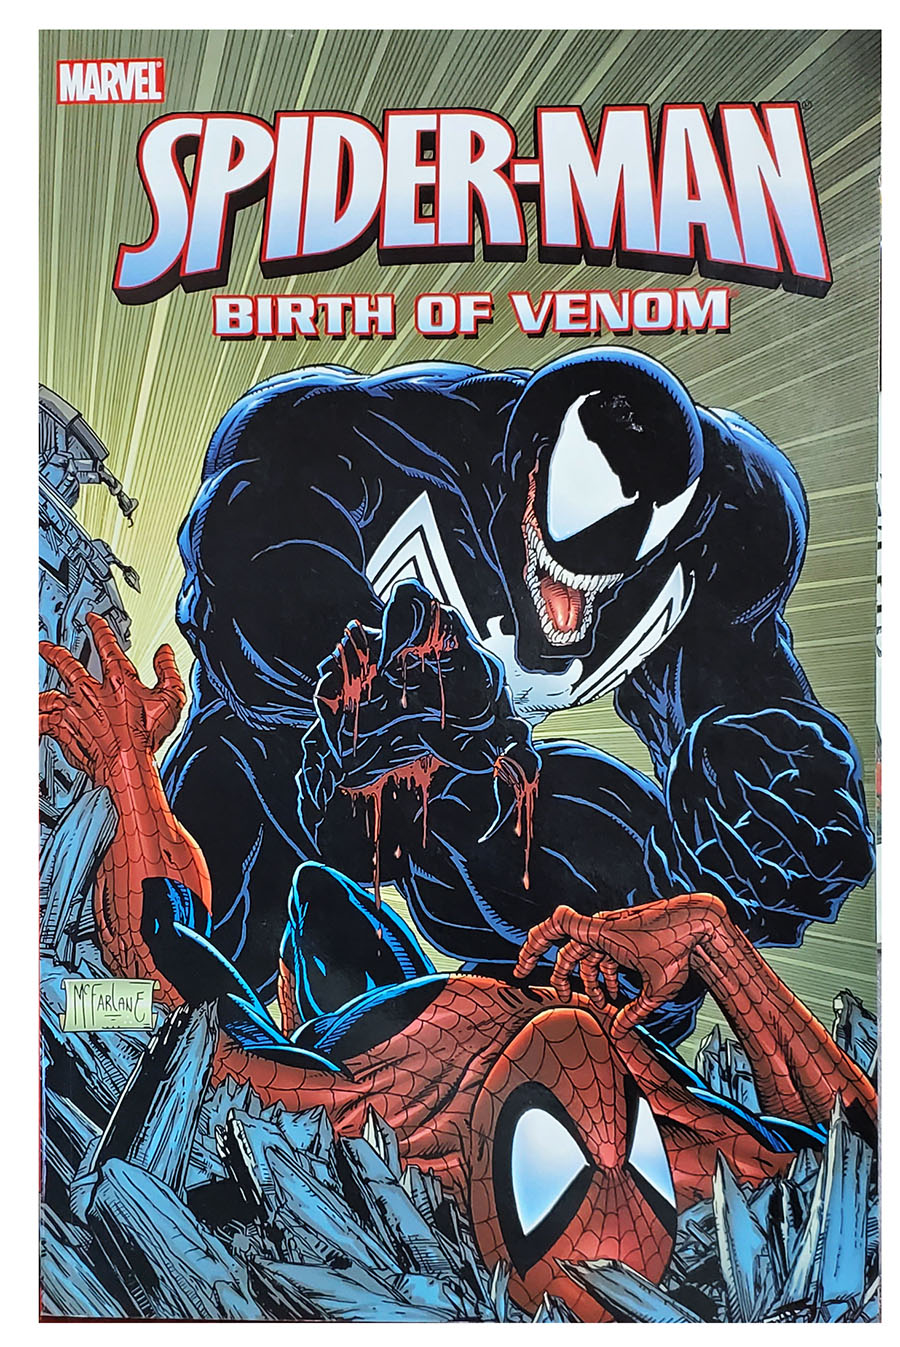 Spider-man birth of venom